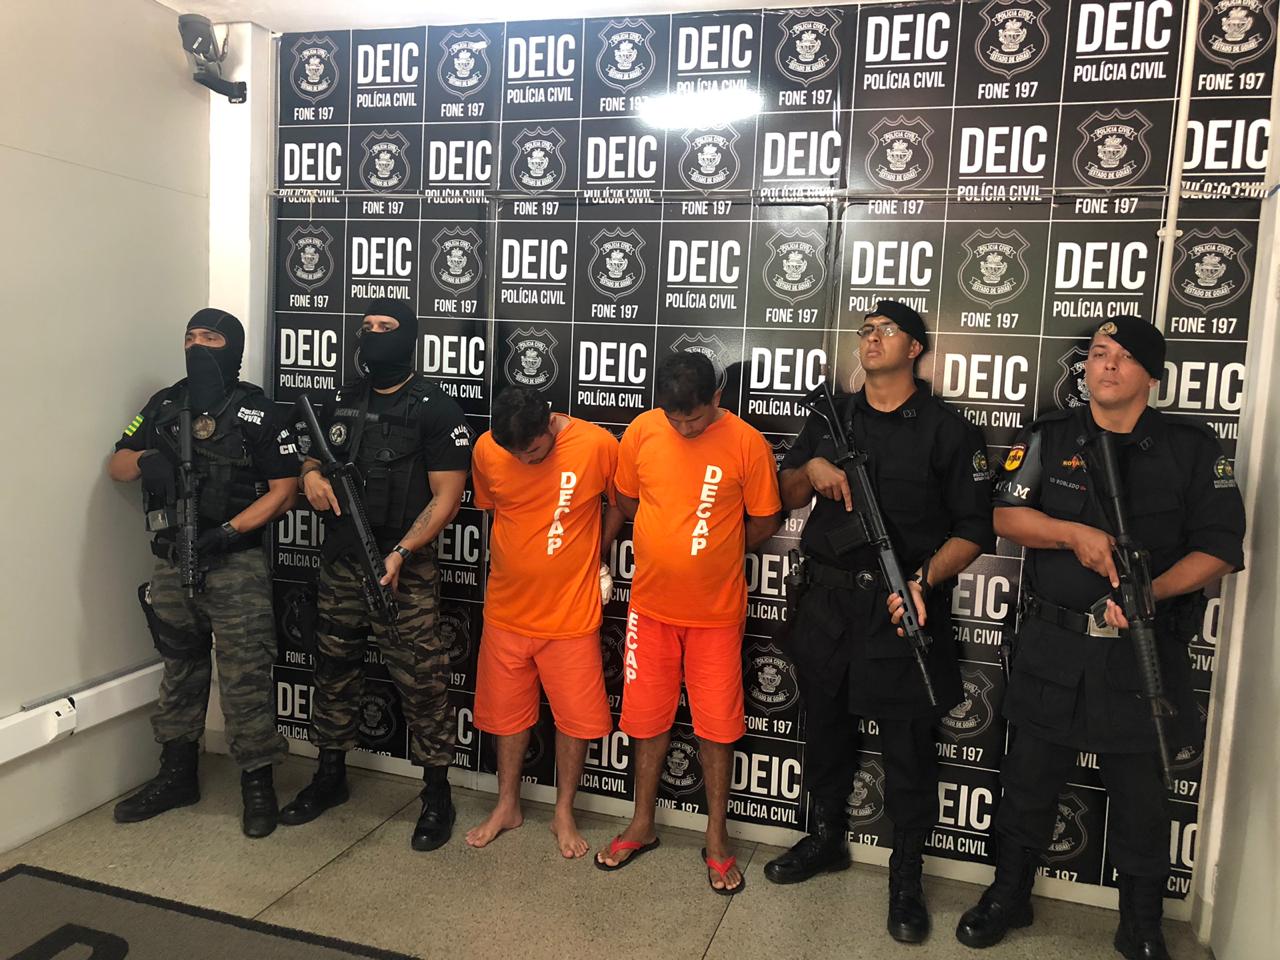 Polícia de Goiás prende criminosos de alta periculosidade acusados de "novo cangaço", em São Paulo